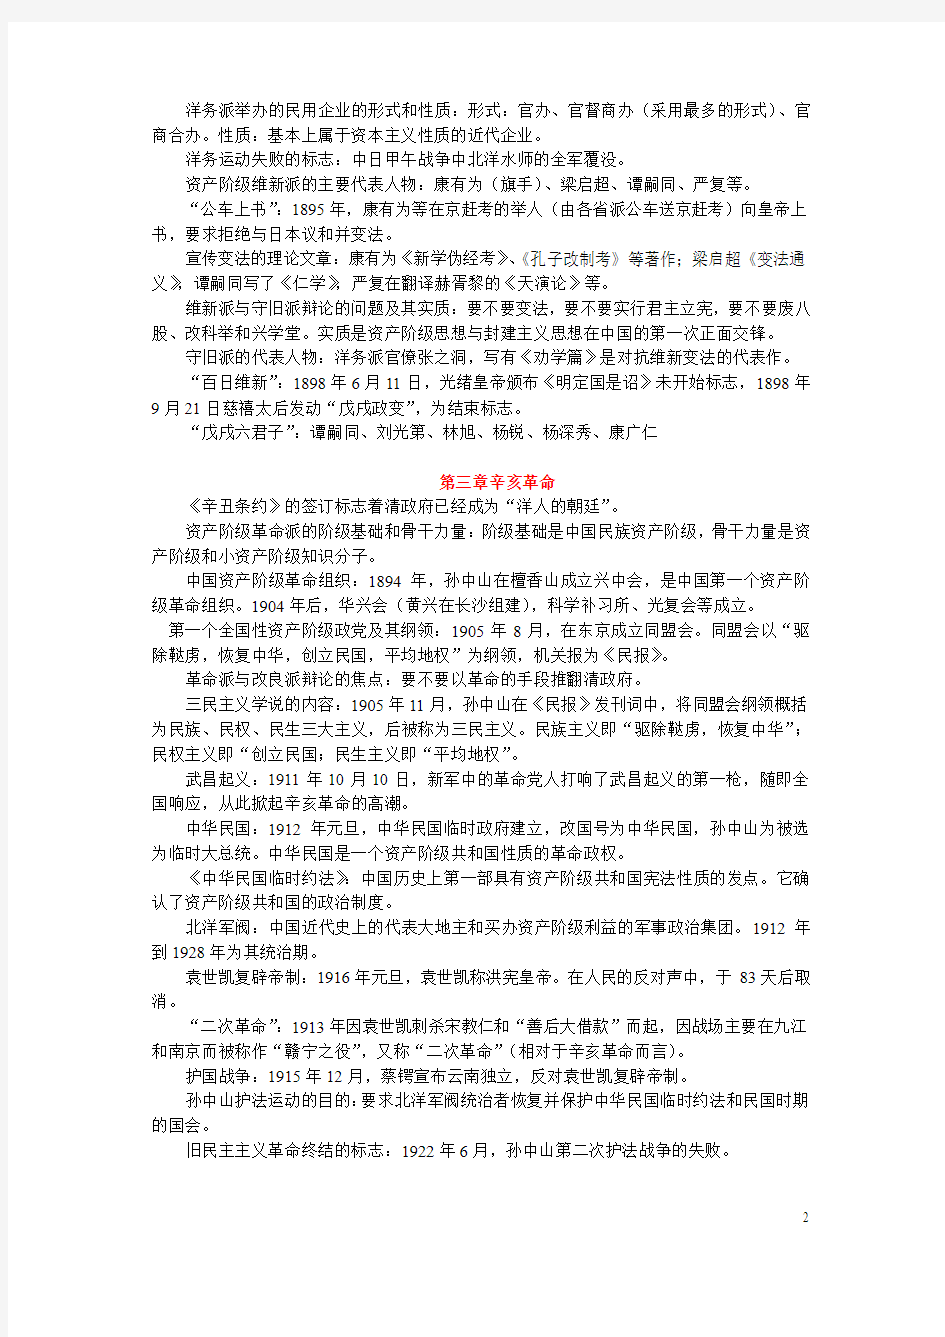 中国近现代史纲要复习资料(2015.12)